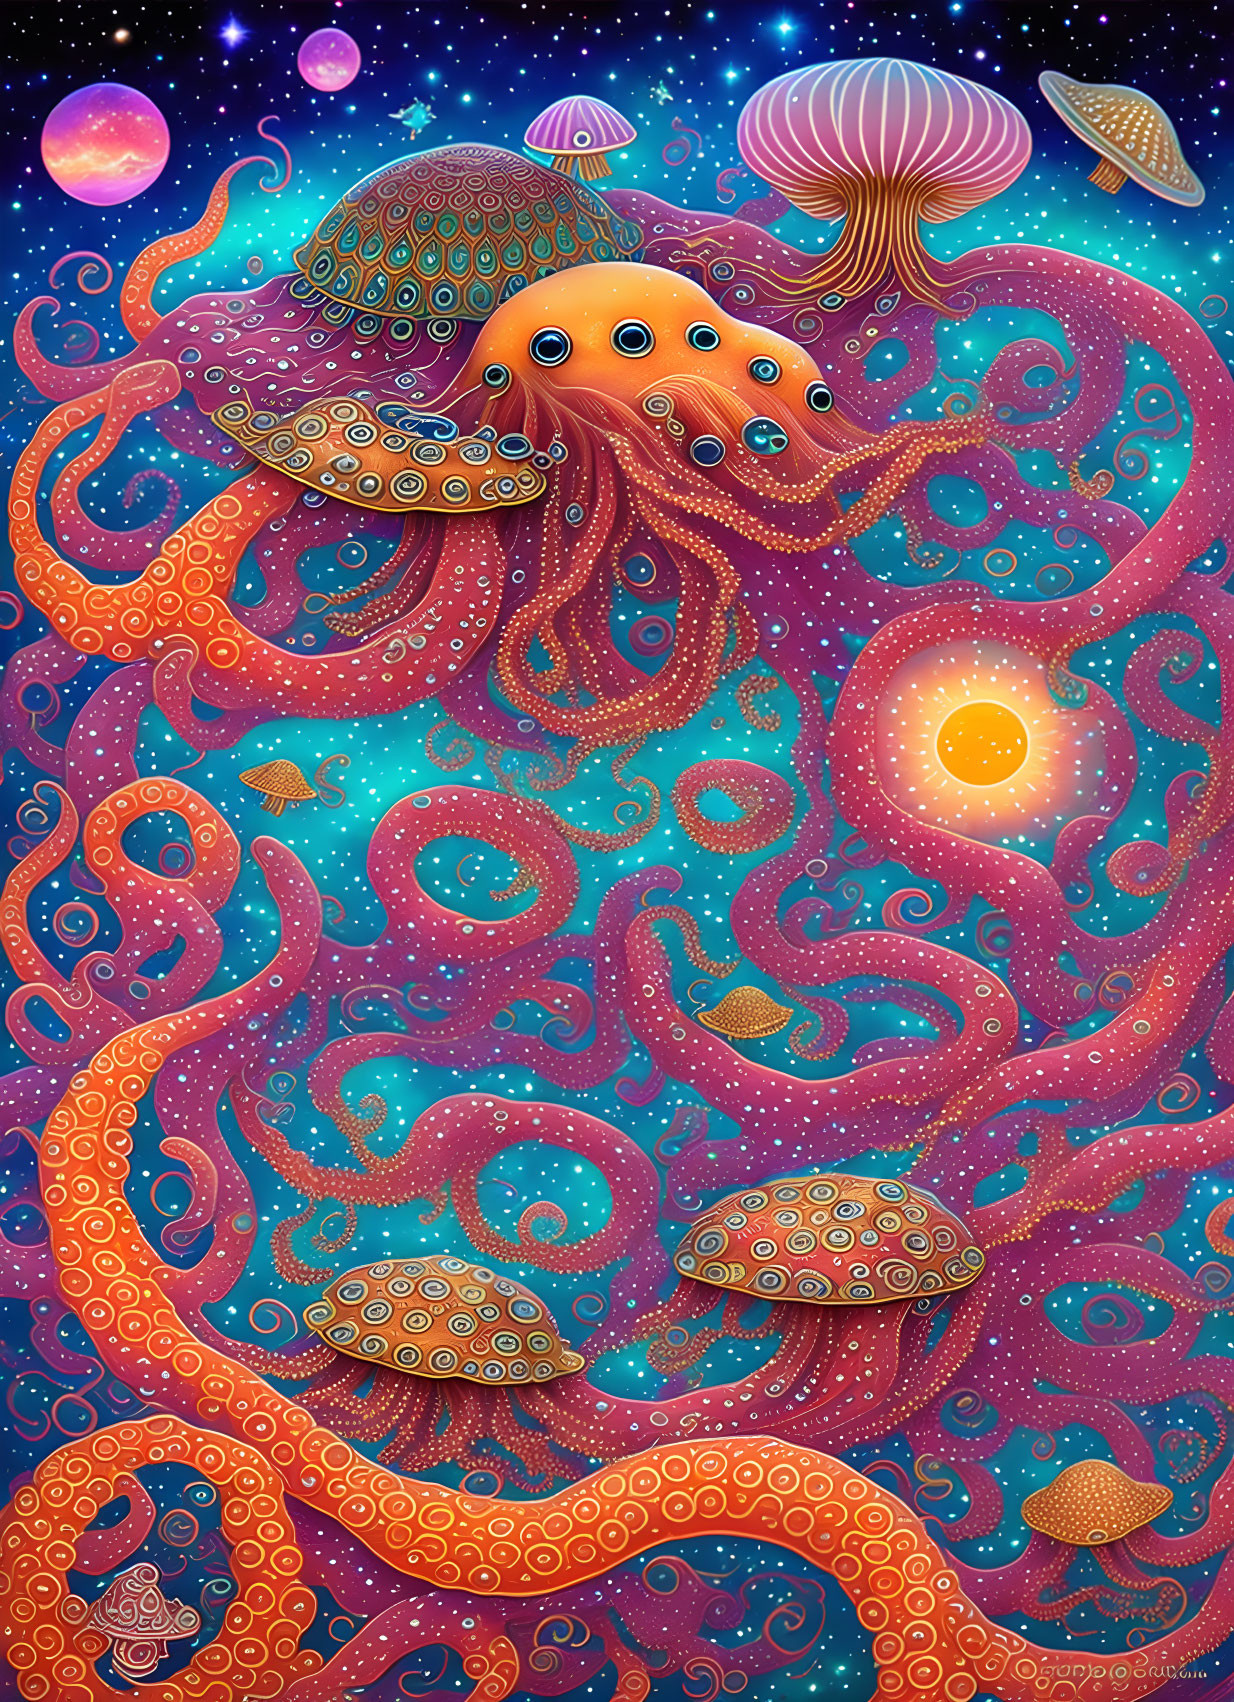 Mushroom octopus 